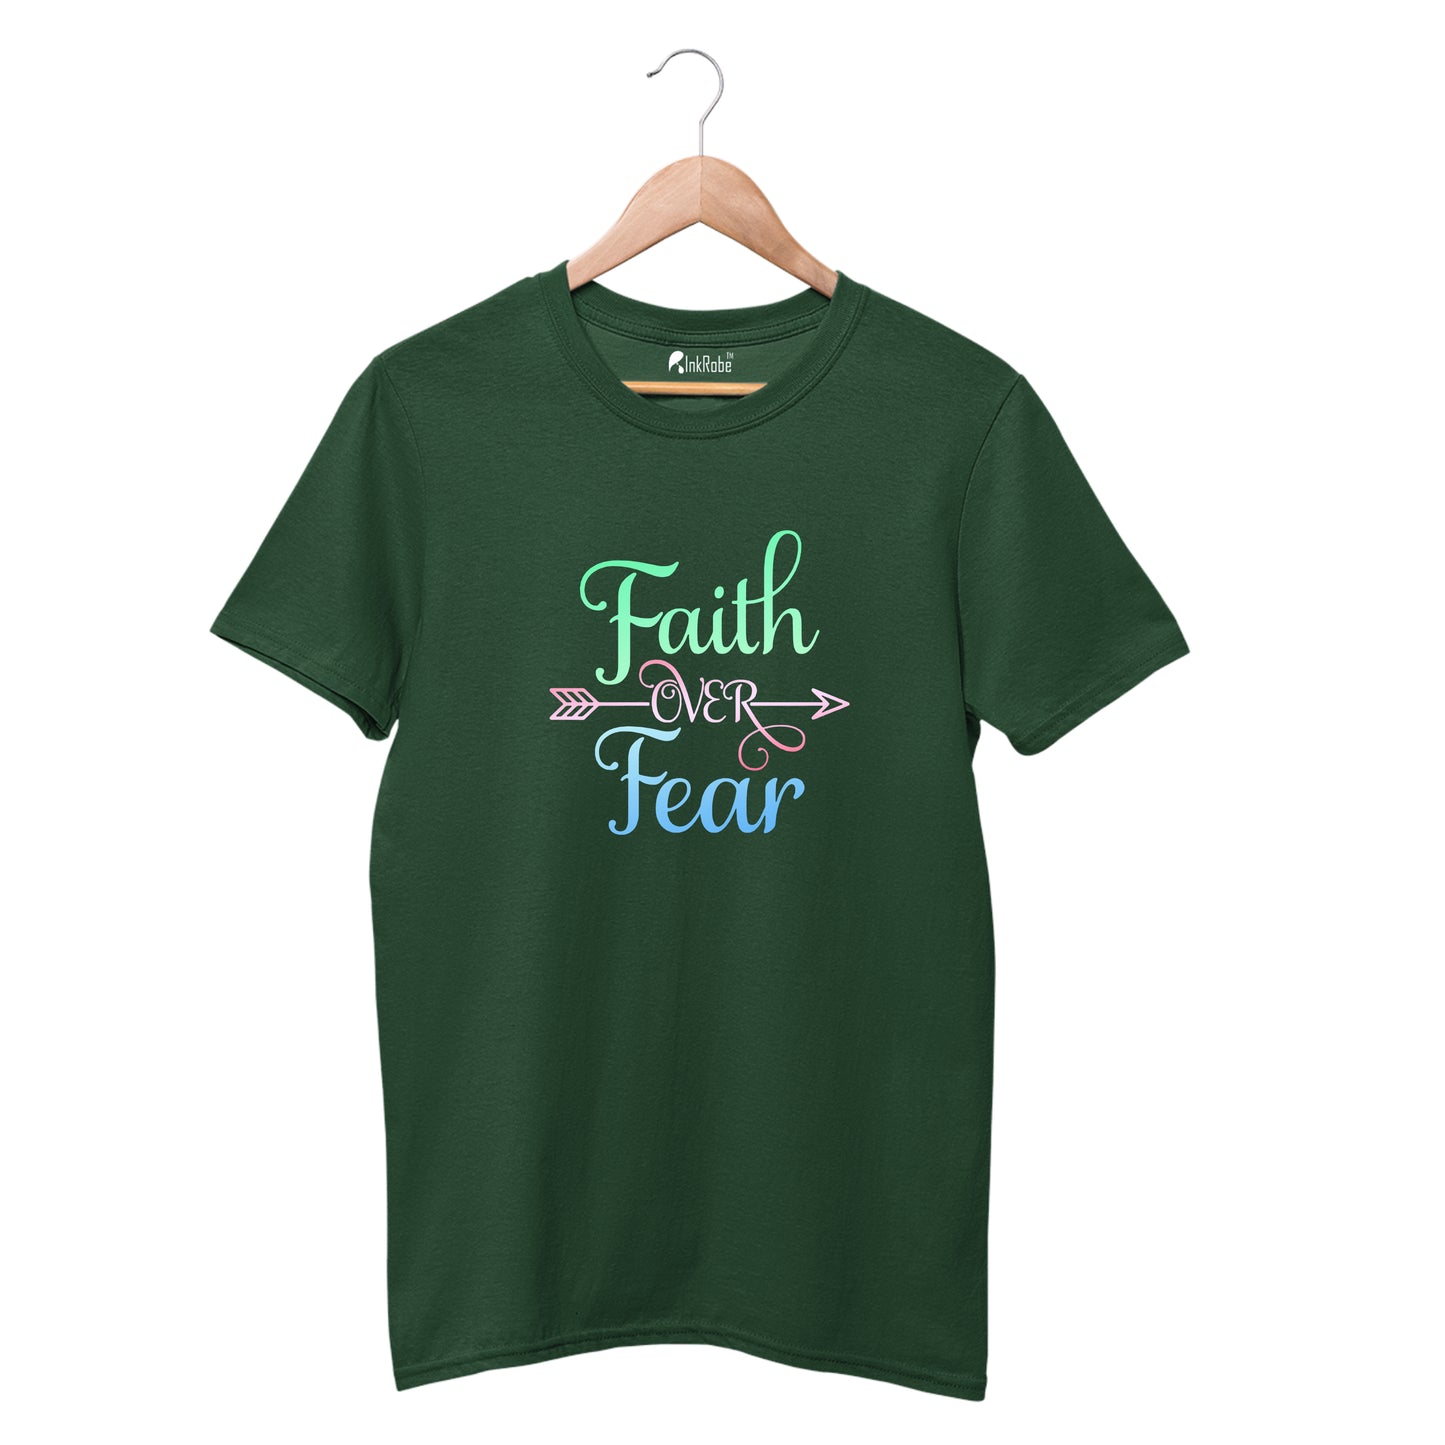 Faith over Fear T shirt